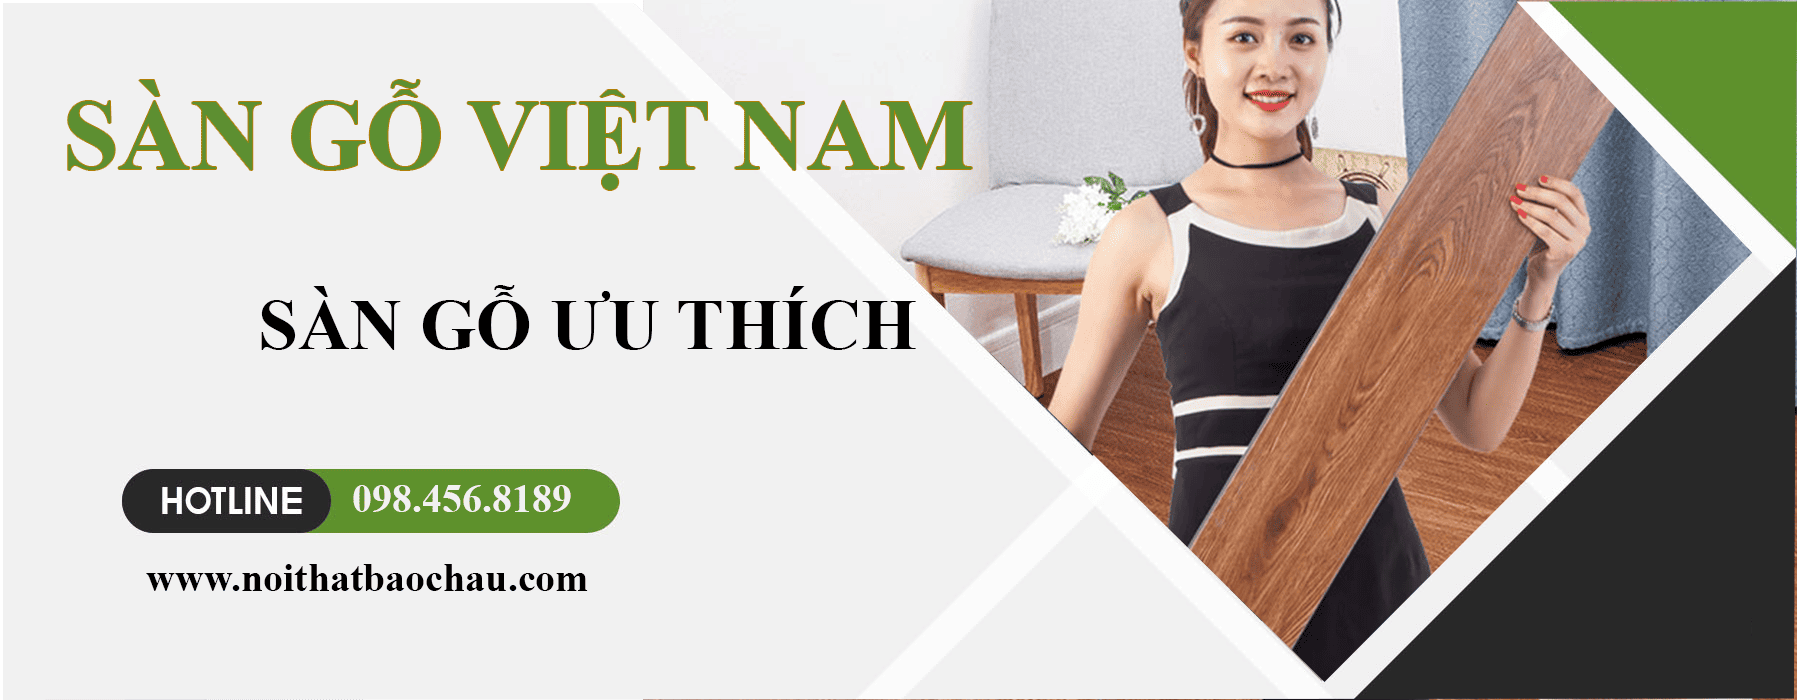 banner san go viet nam